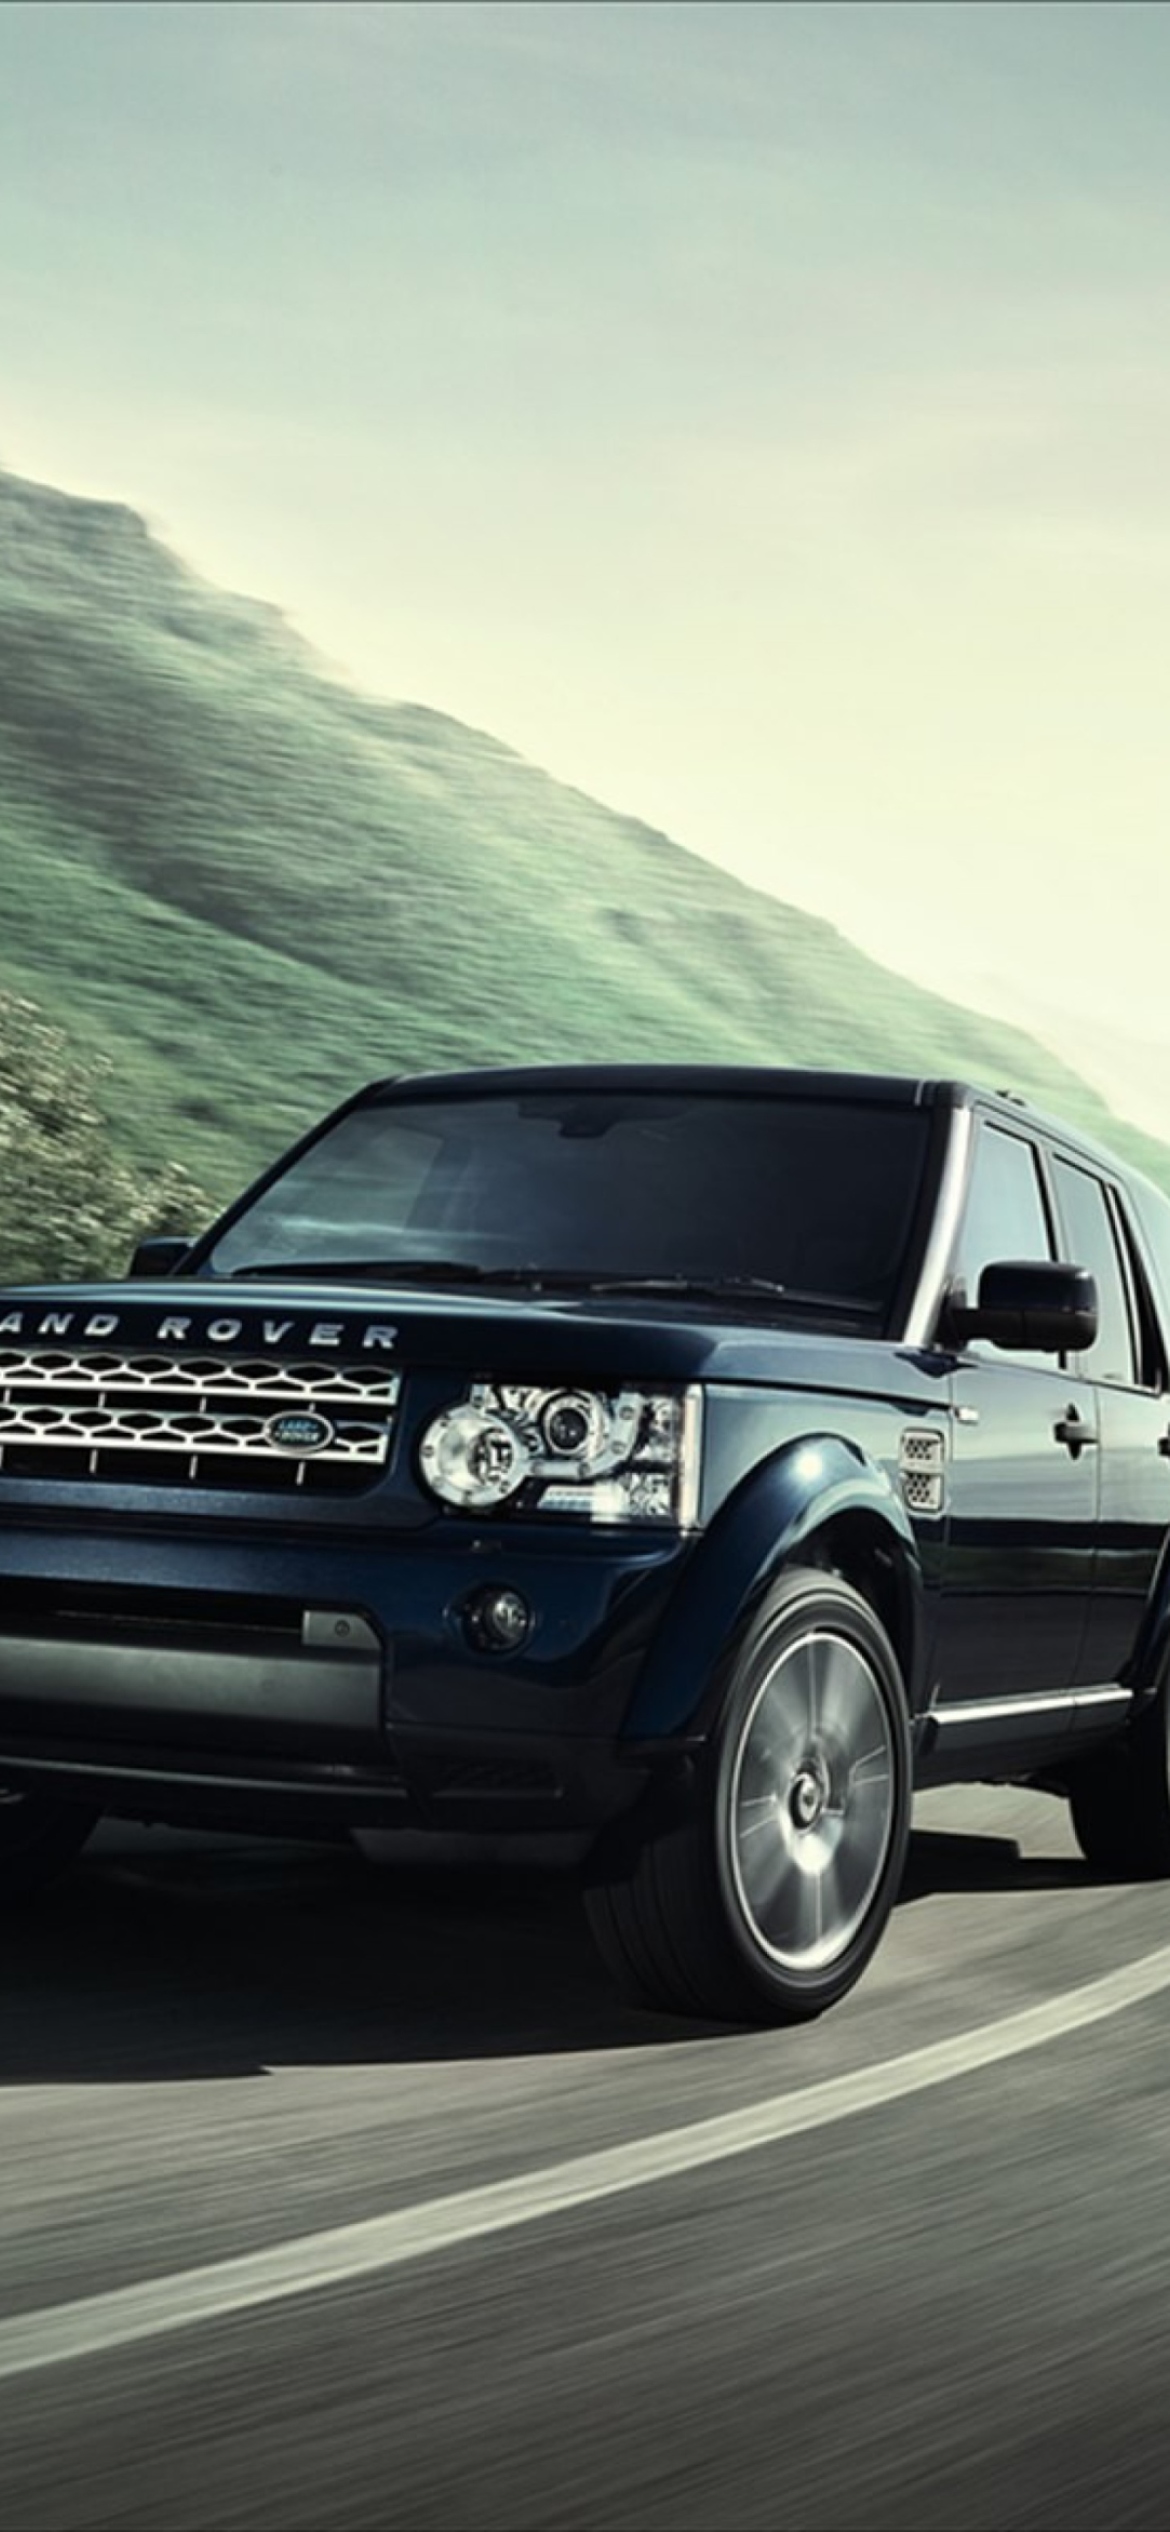 Fondo de pantalla Land Rover Discovery 4 1170x2532